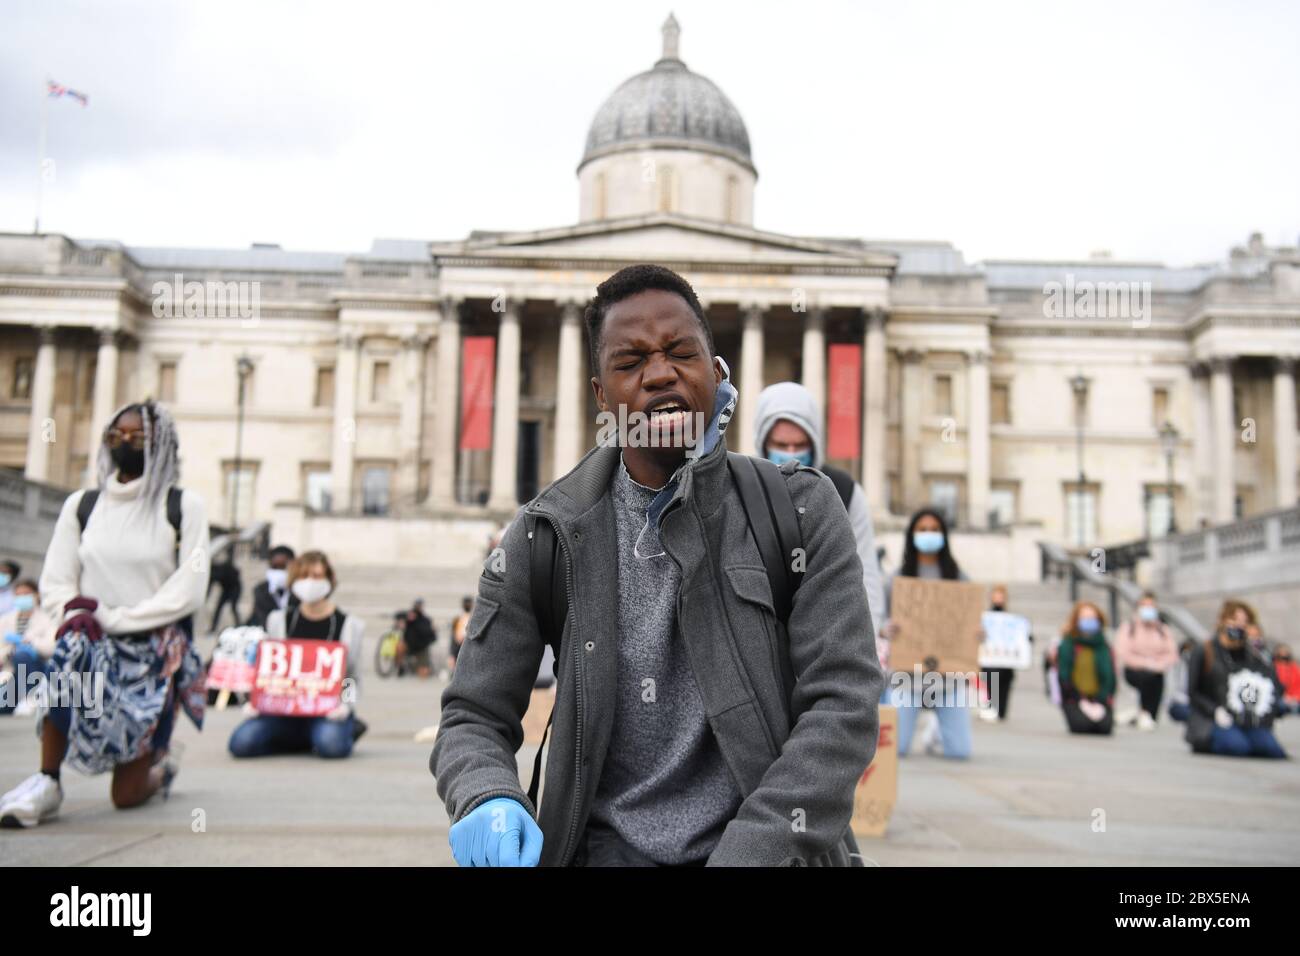 Des gens participent à une manifestation à genoux pour des Black Lives Matter à Trafalgar Square, Londres, à la mémoire de George Floyd, qui a été tué le 25 mai alors qu'il était en garde à vue dans la ville américaine de Minneapolis. Banque D'Images